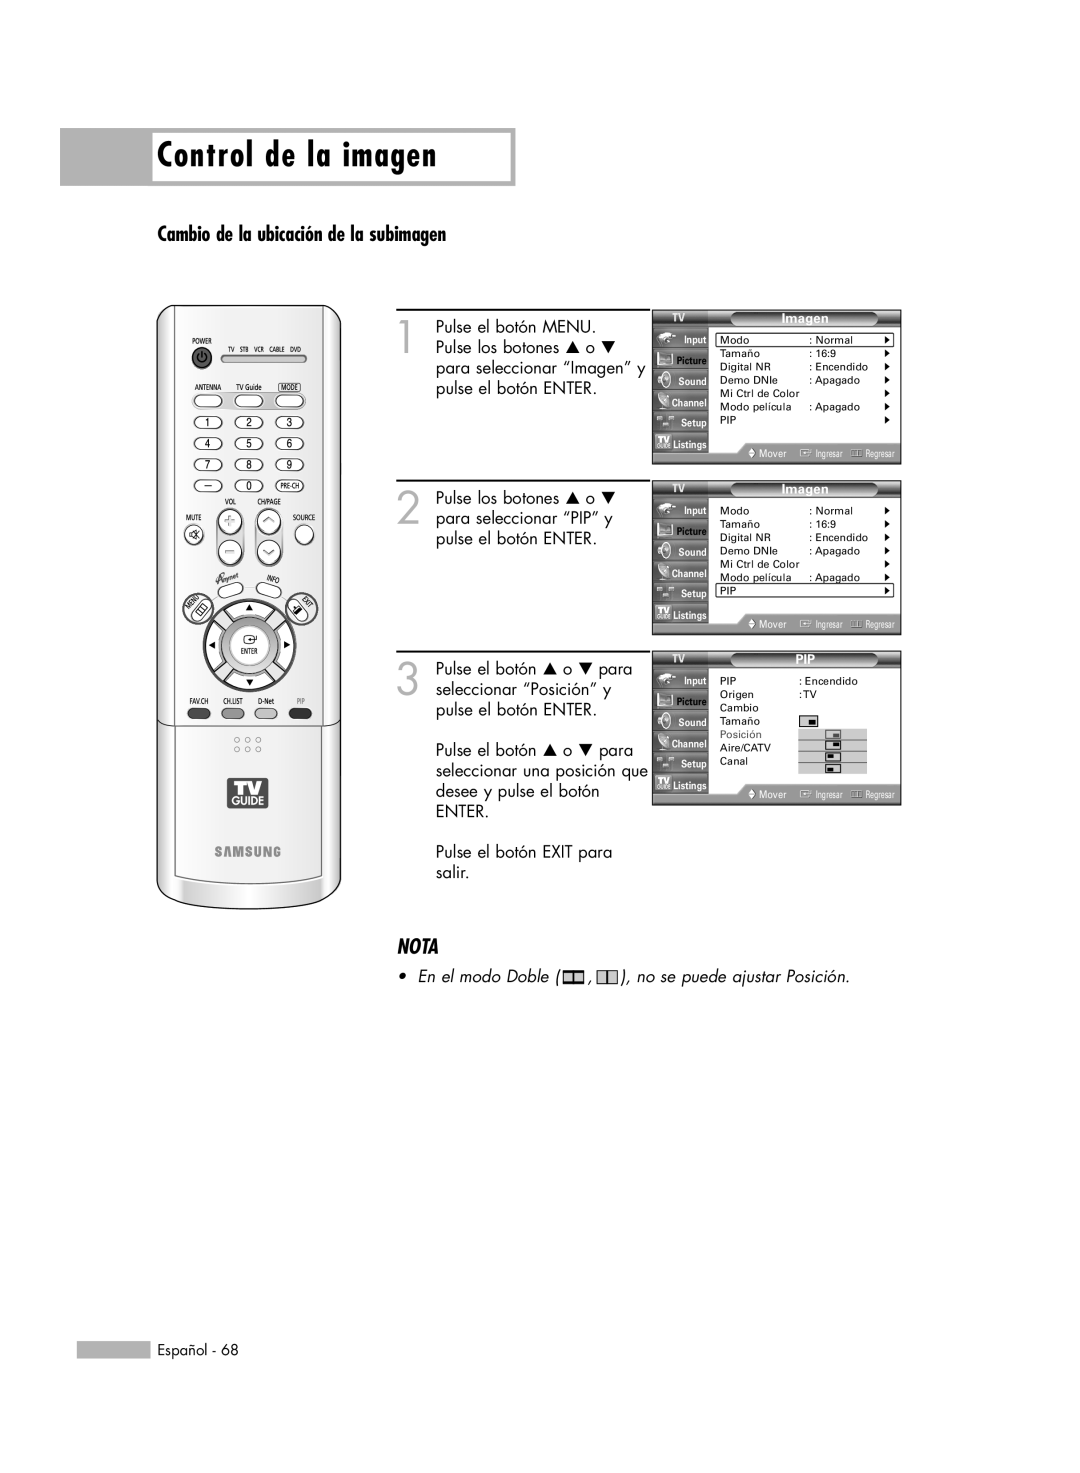 Samsung HL-R6178W, HL-R5078W, HL-R5678W, HL-R7178W manual Control de la imagen, Nota, Cambio de la ubicación de la subimagen 